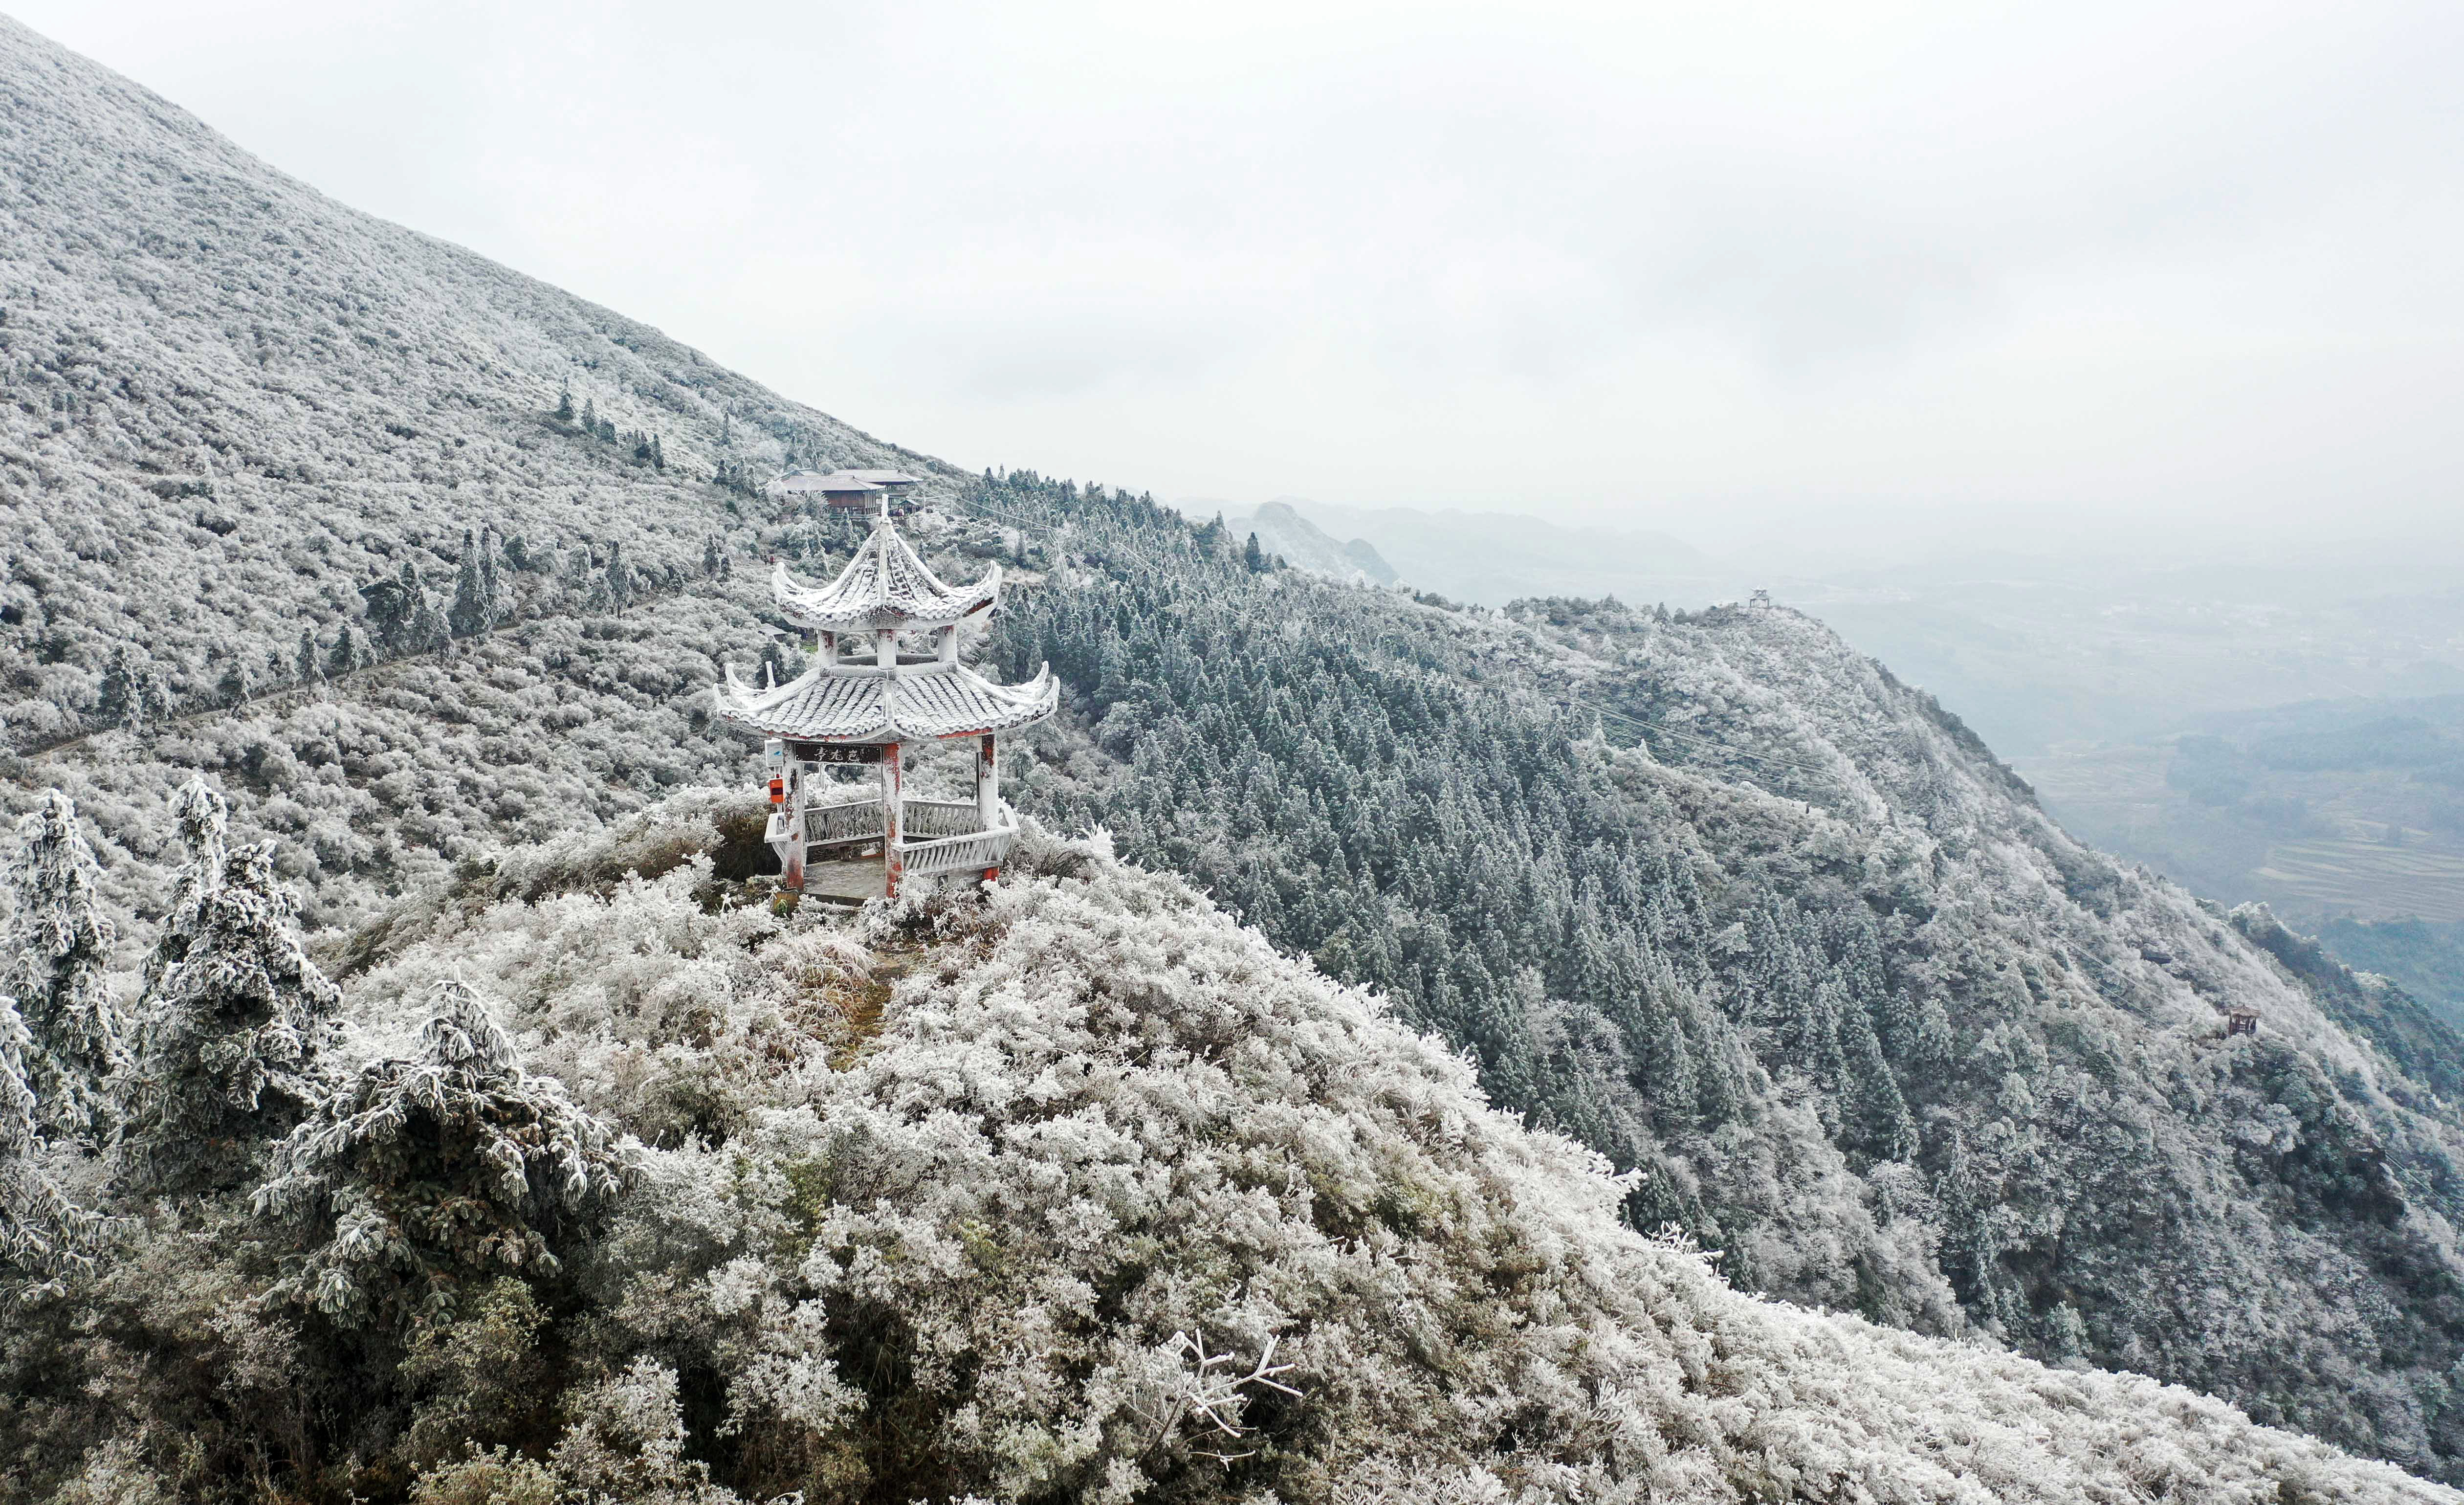 这是12月16日拍摄的贵州省丹寨县龙泉山景区(无人机照片)